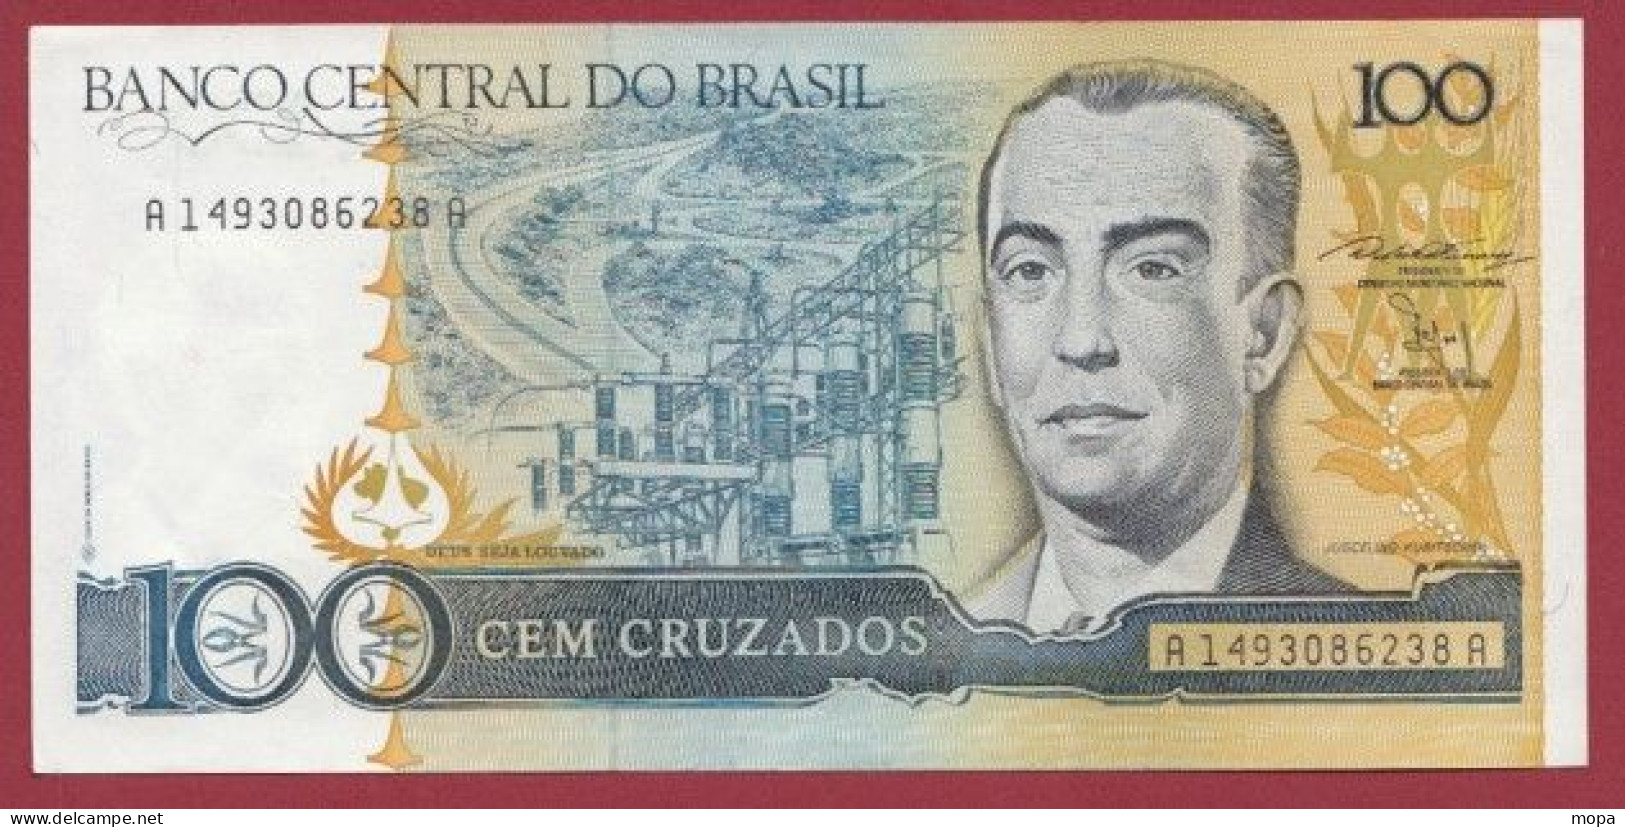 Brésil-- 100 Cruzeiros  --1987   ---UNC --(397) - Brasile